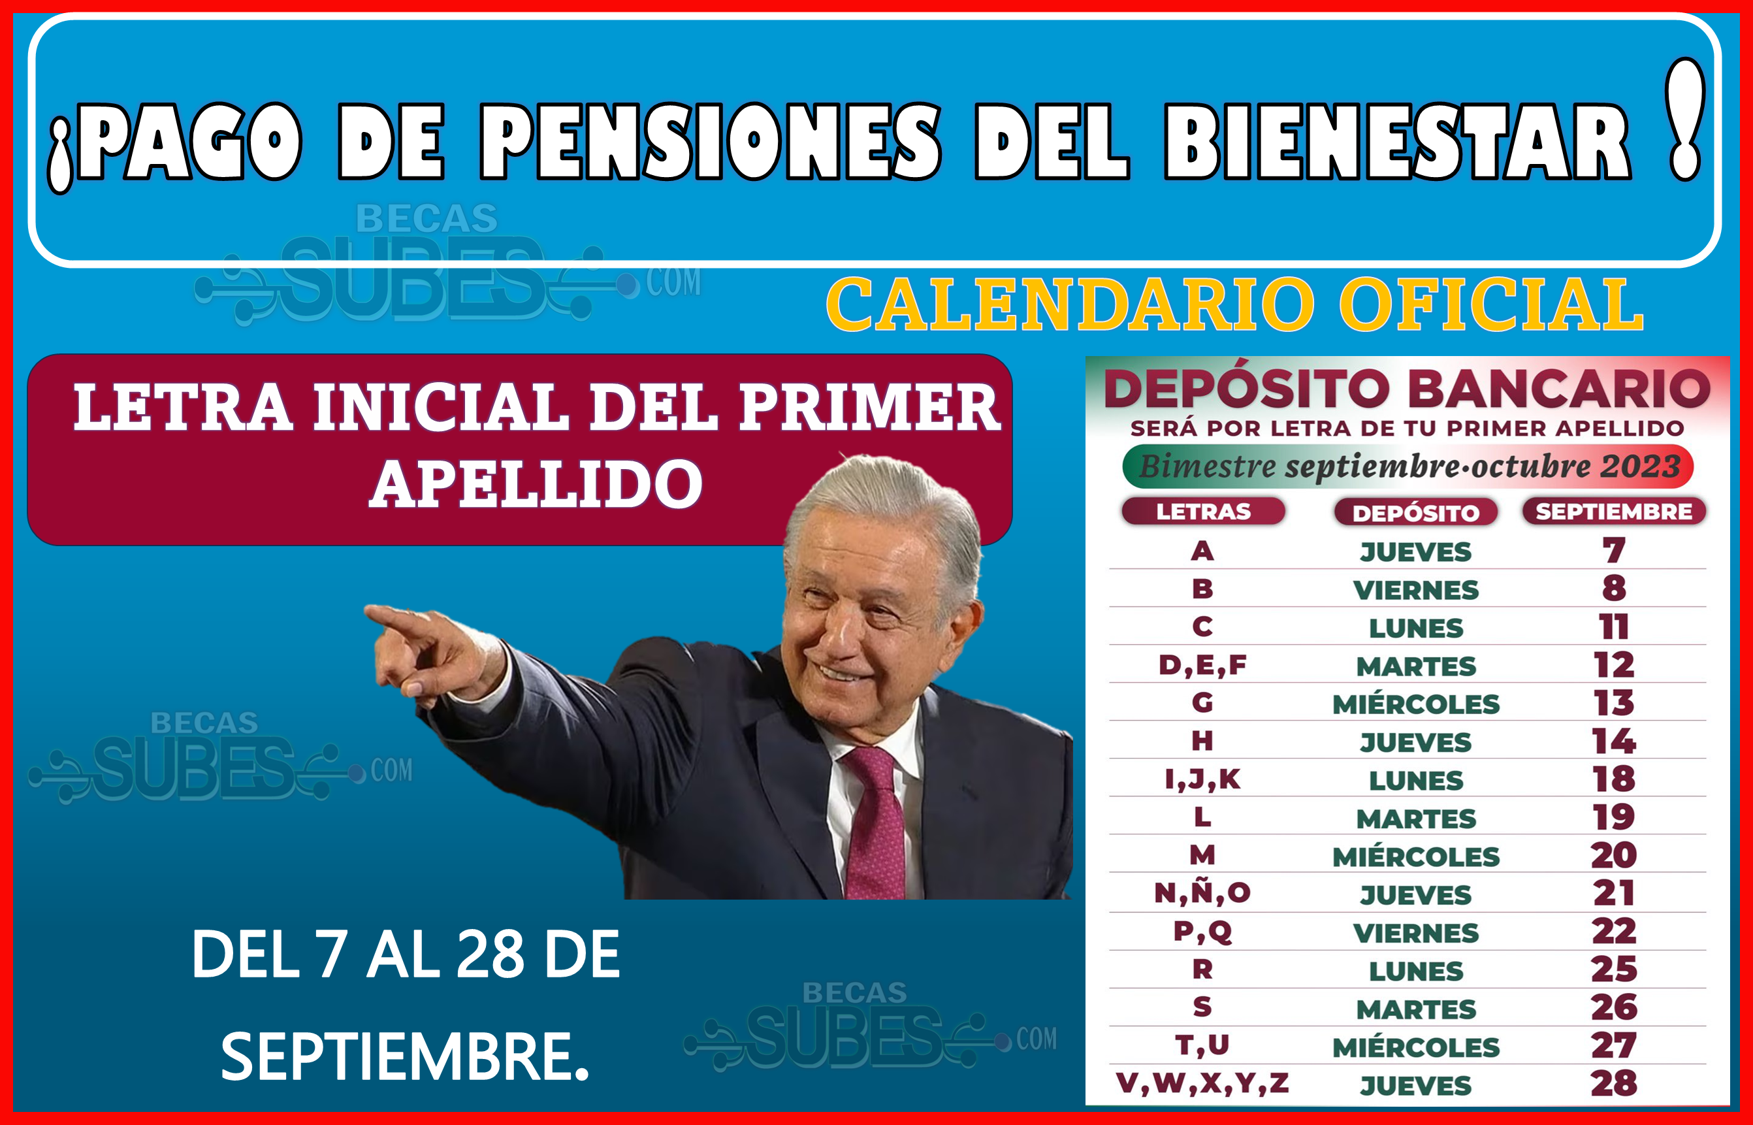 Se realiza el pago de Pensiones de Bienestar con el calendario oficial del 7 al 28 de septiembre.